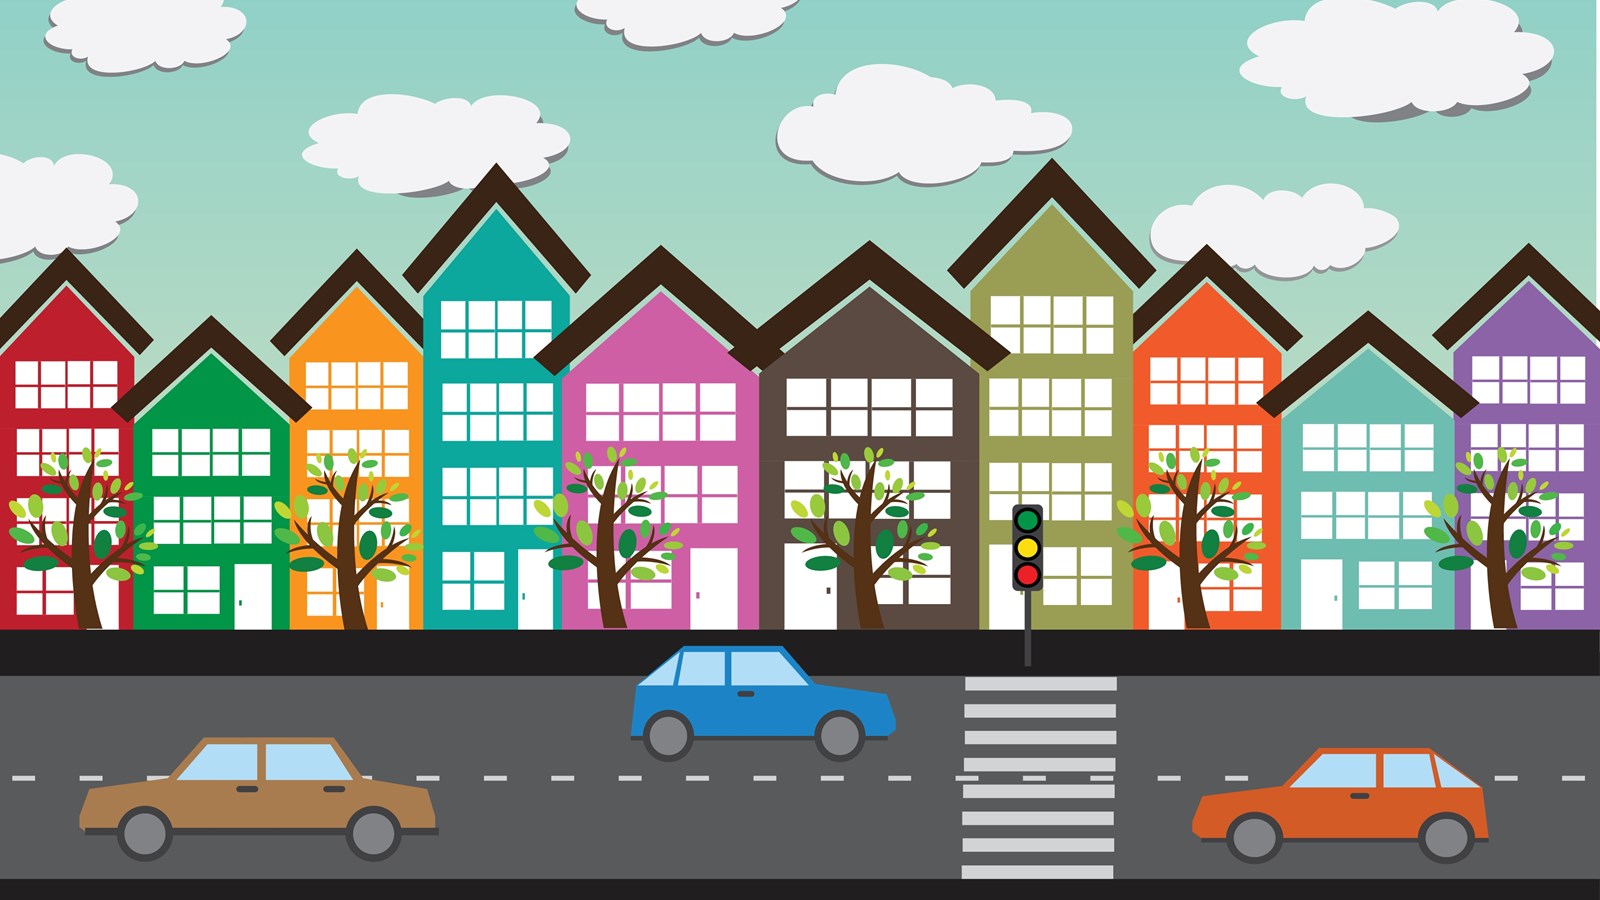 Grafisk fremstilling af huse, biler og vej